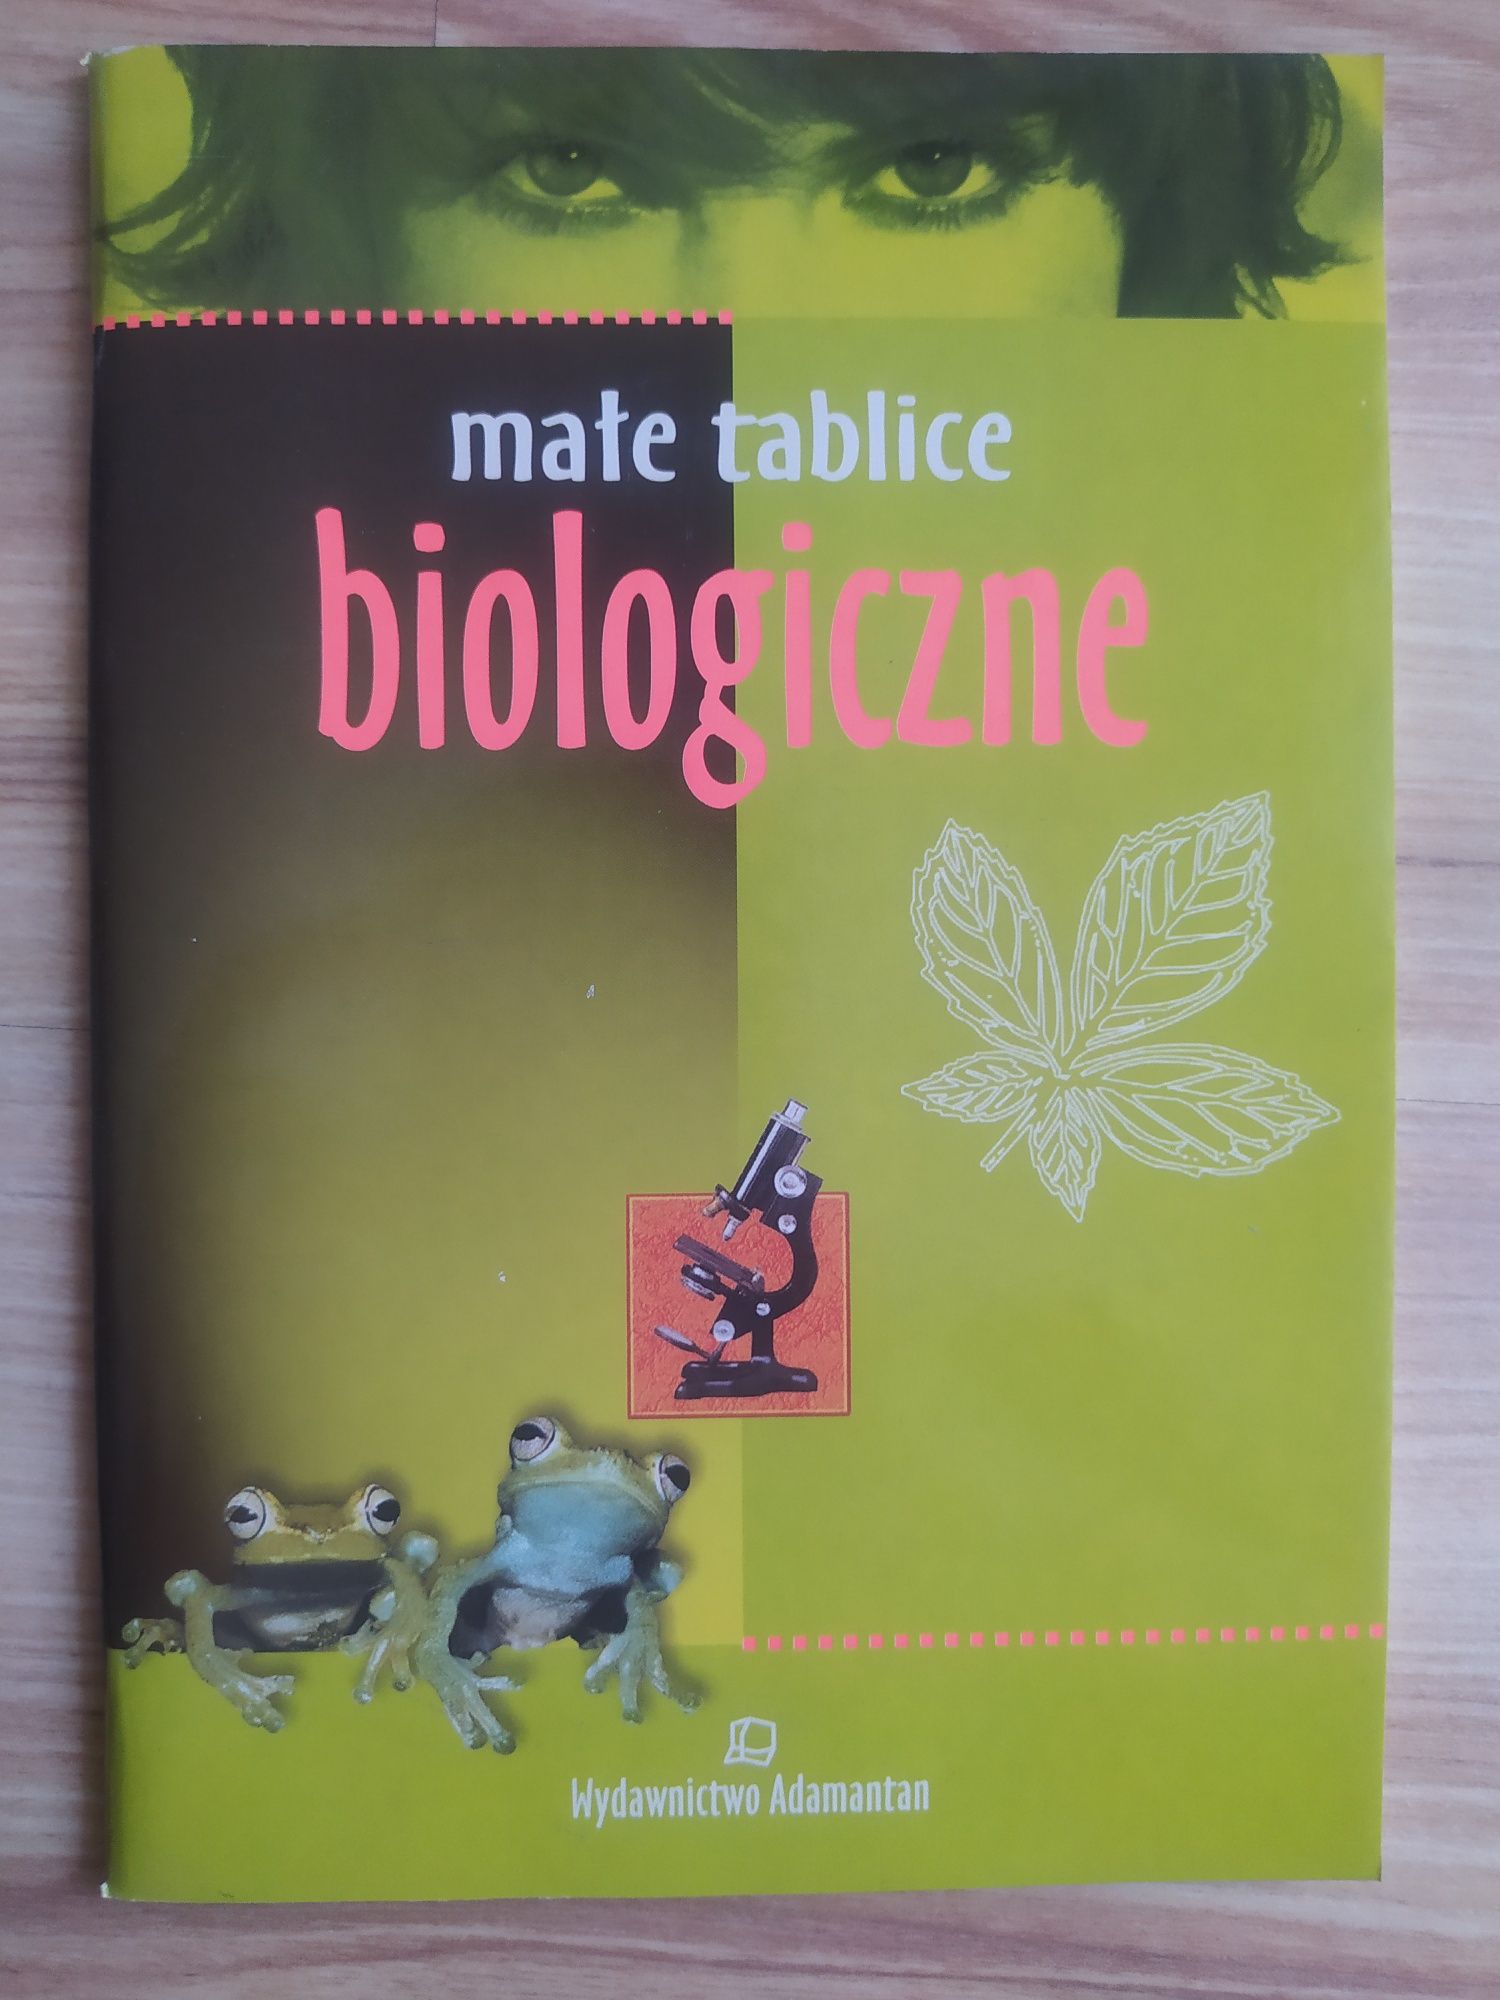 Małe tablice biologiczne - wydawnictwo Adamantan